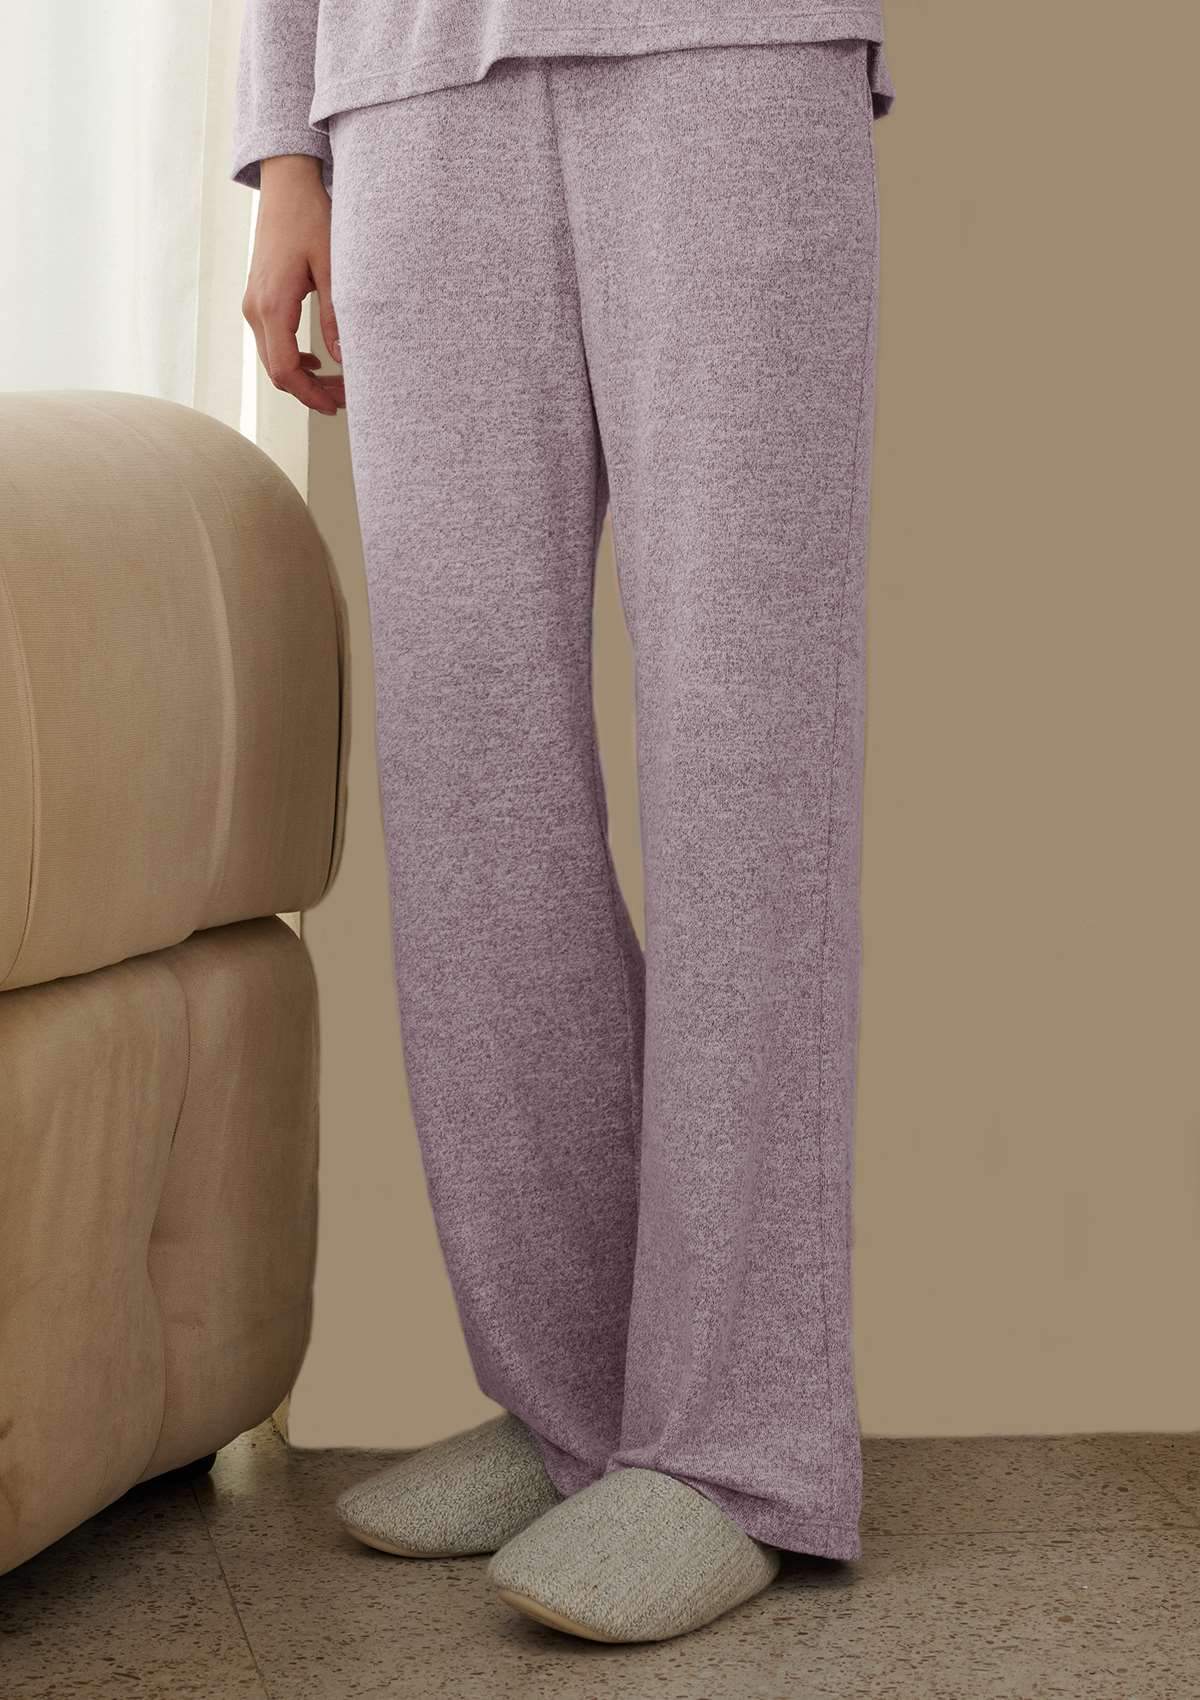 HSIA HSIA Knit Long Sleeve Pajama Set Pants / XS / Purple